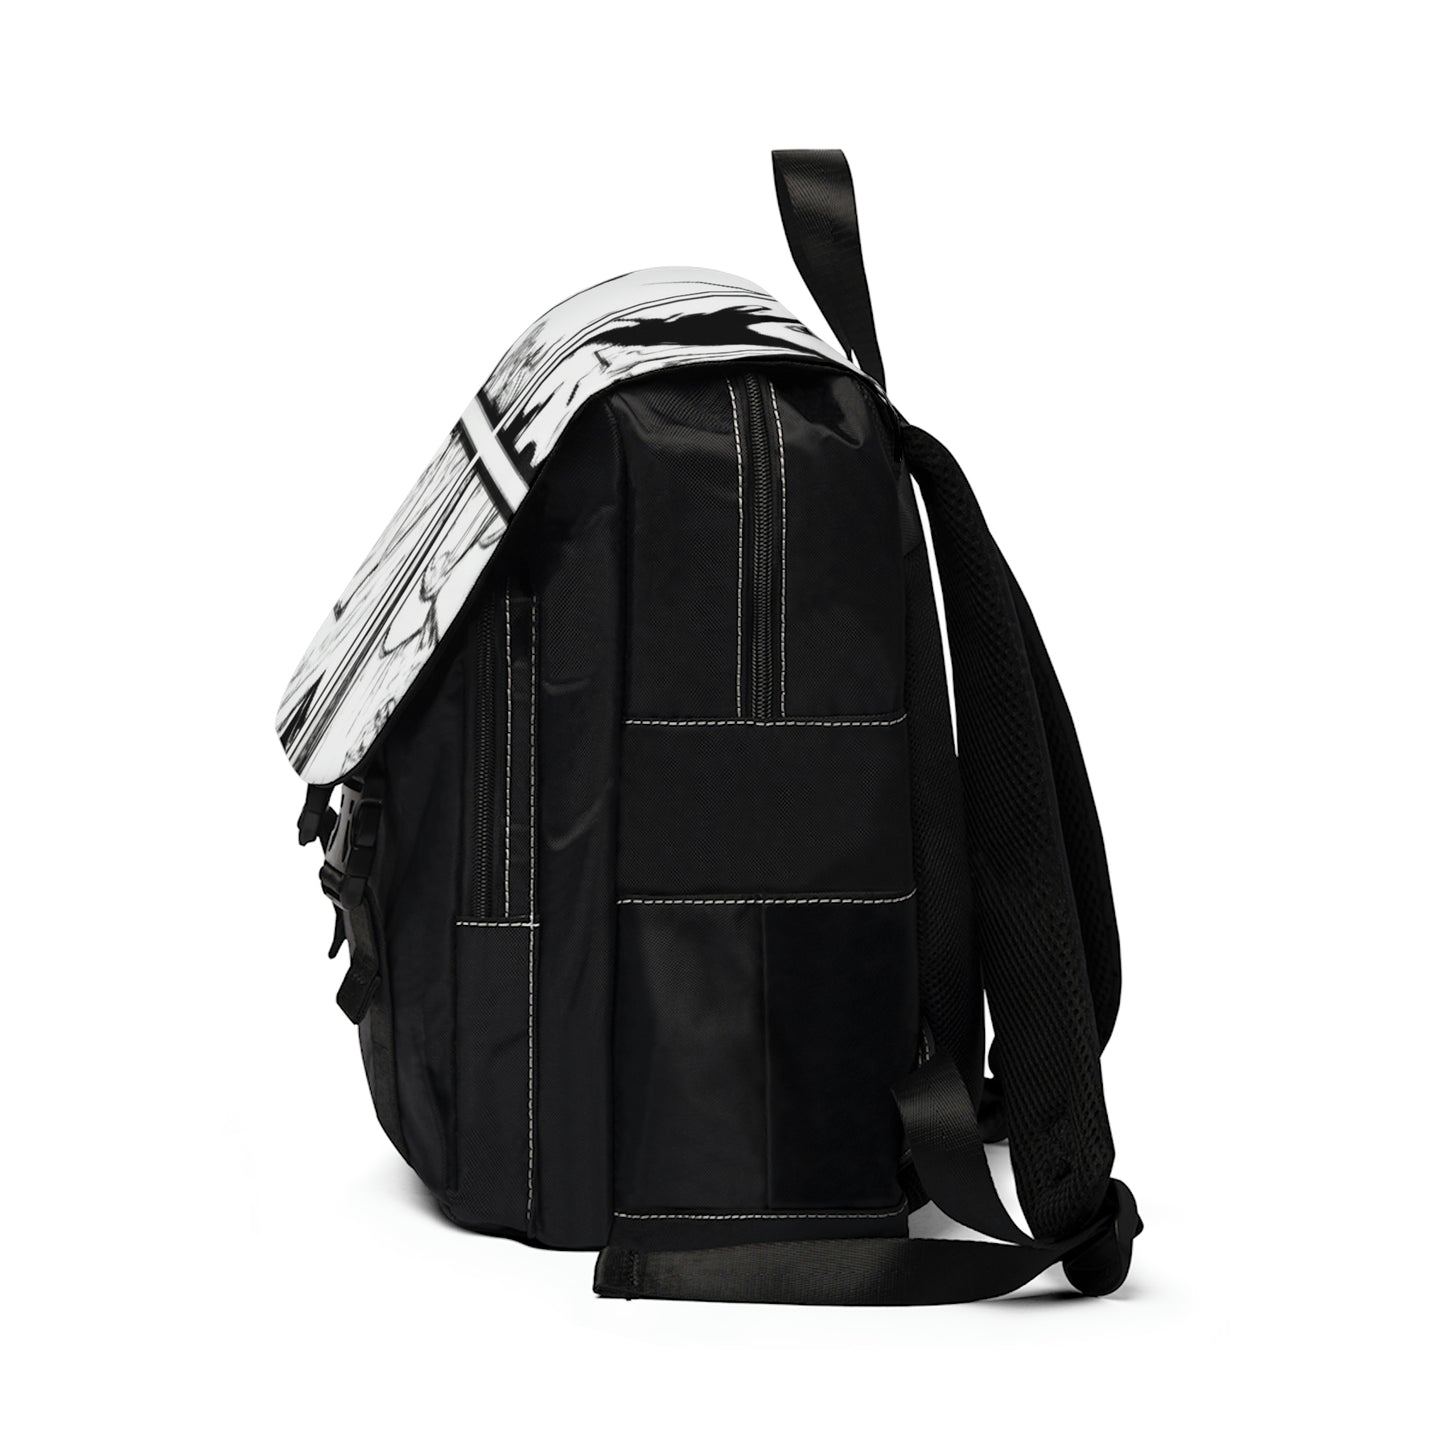 Reginella - Comic Book Shoulder Travel Backpack Bag